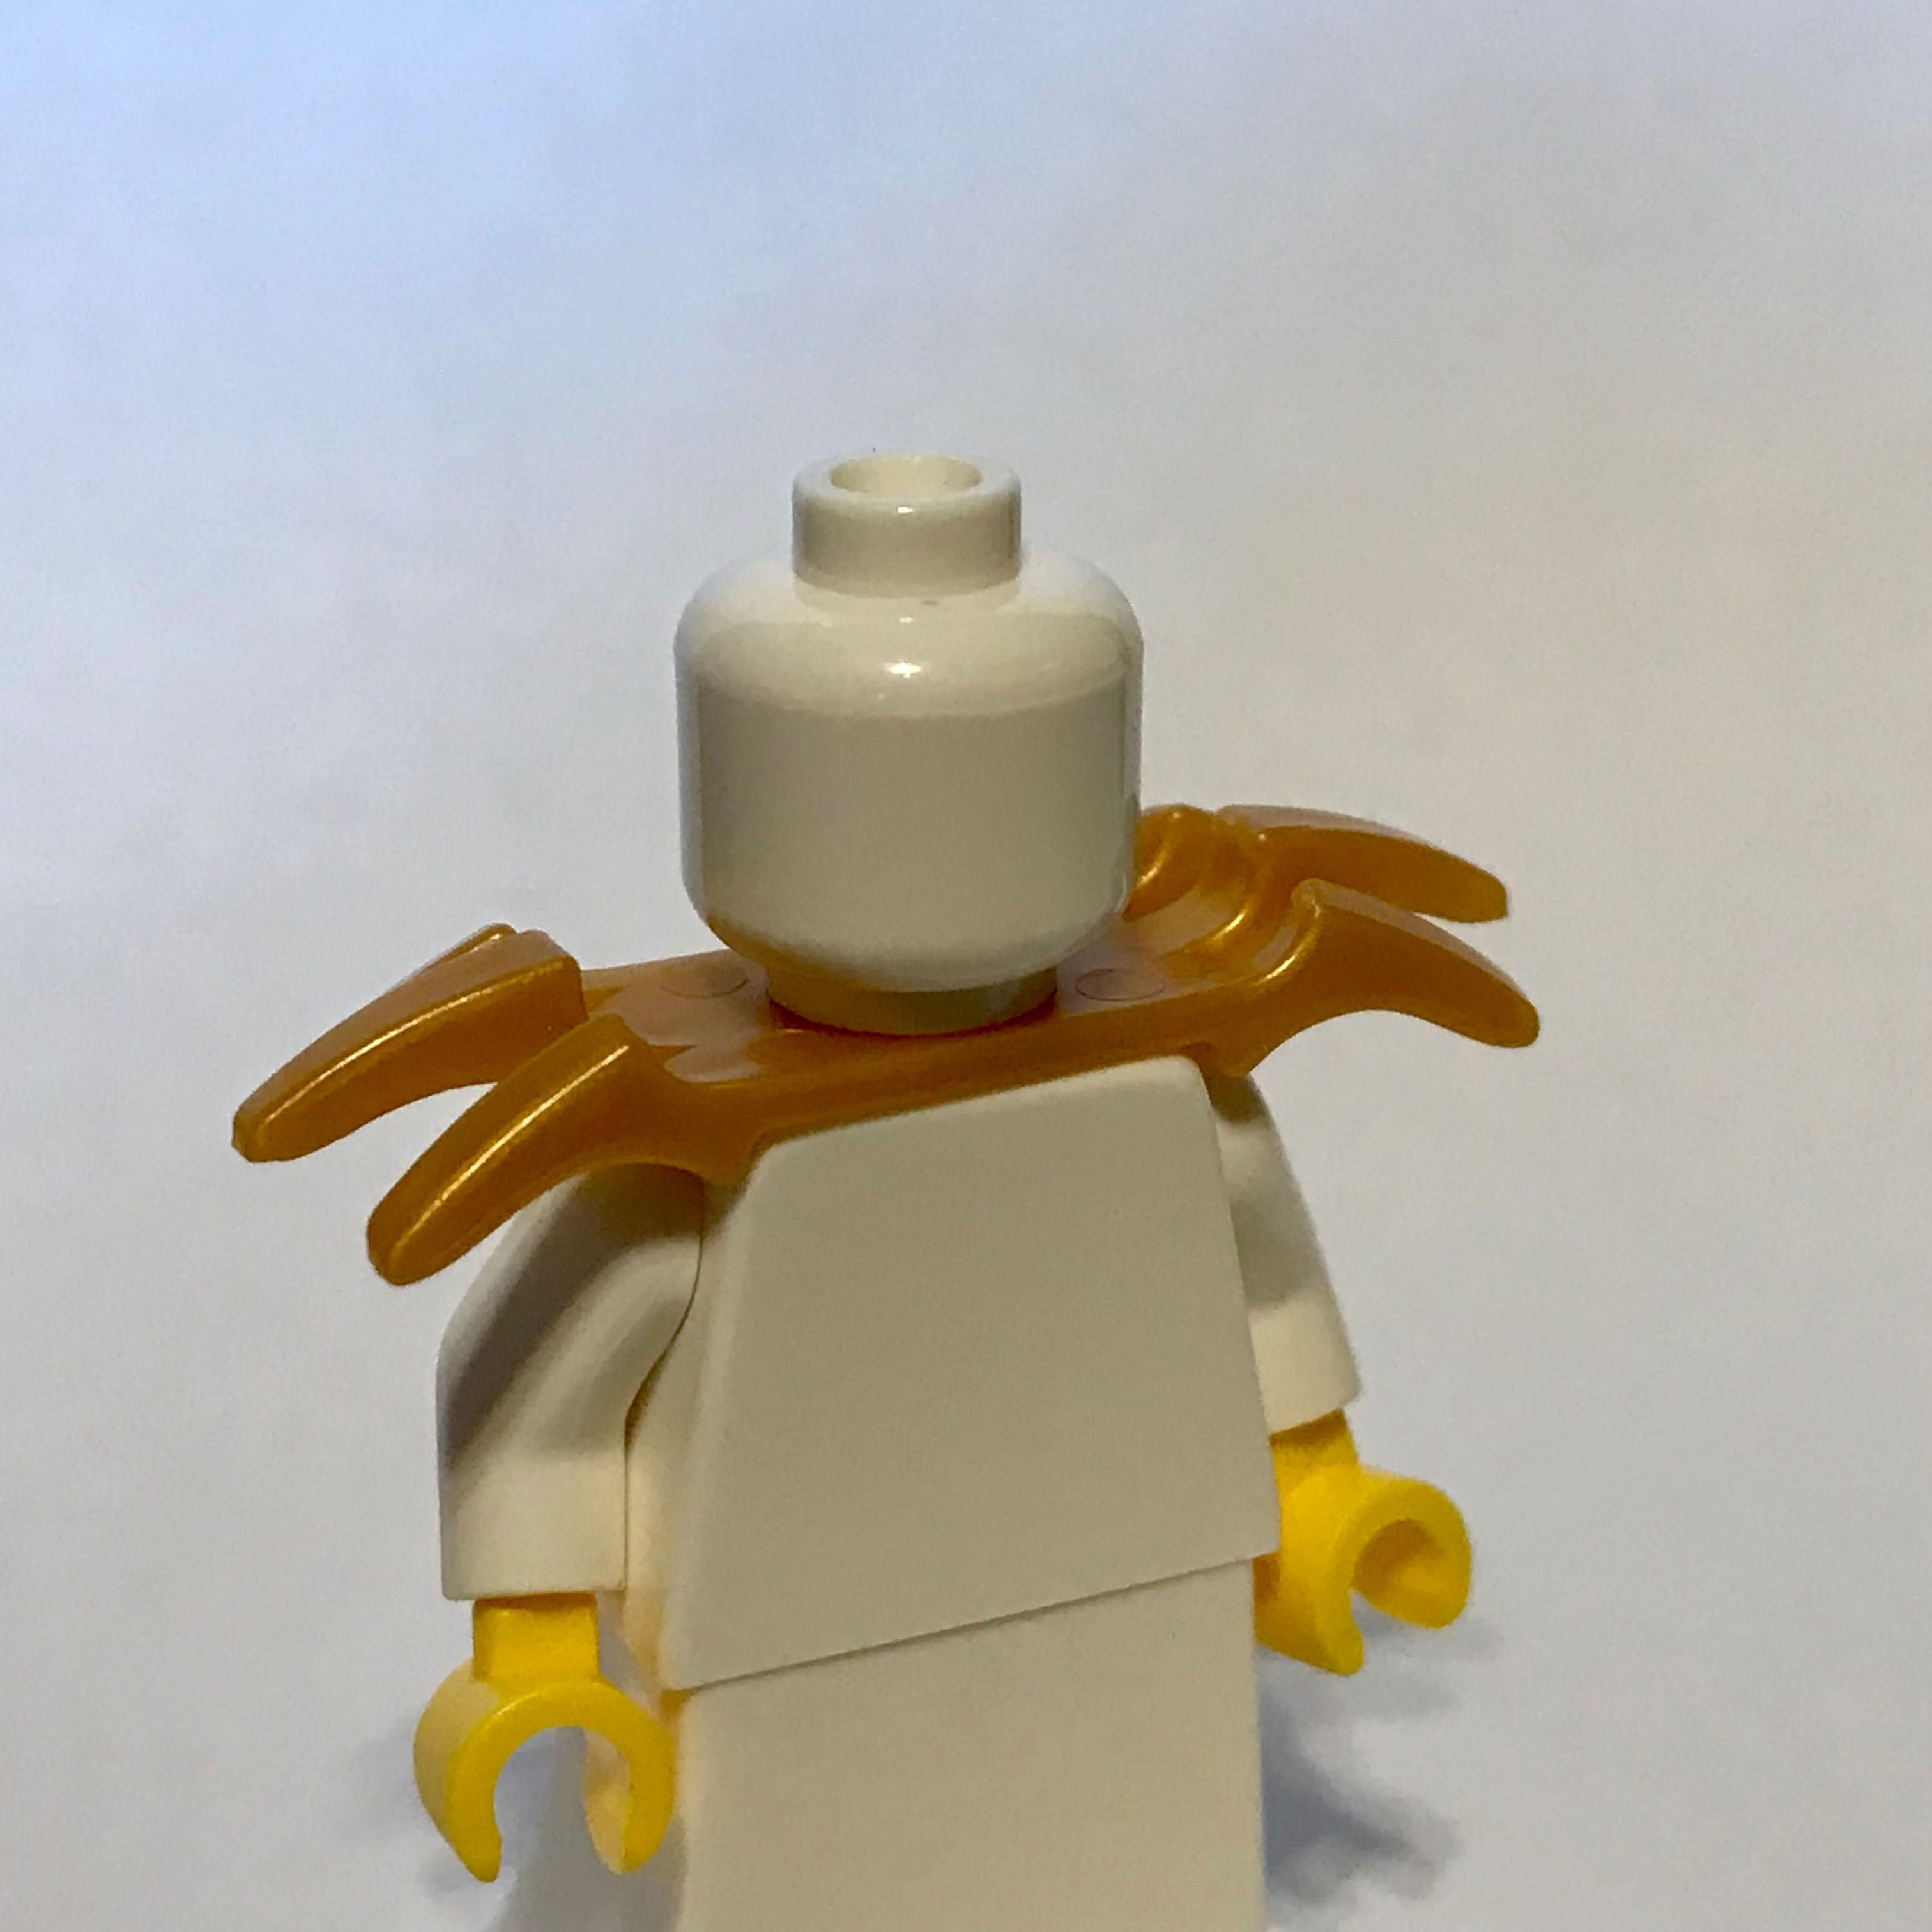 LEGO naramiennik z kolcami rycerz castle